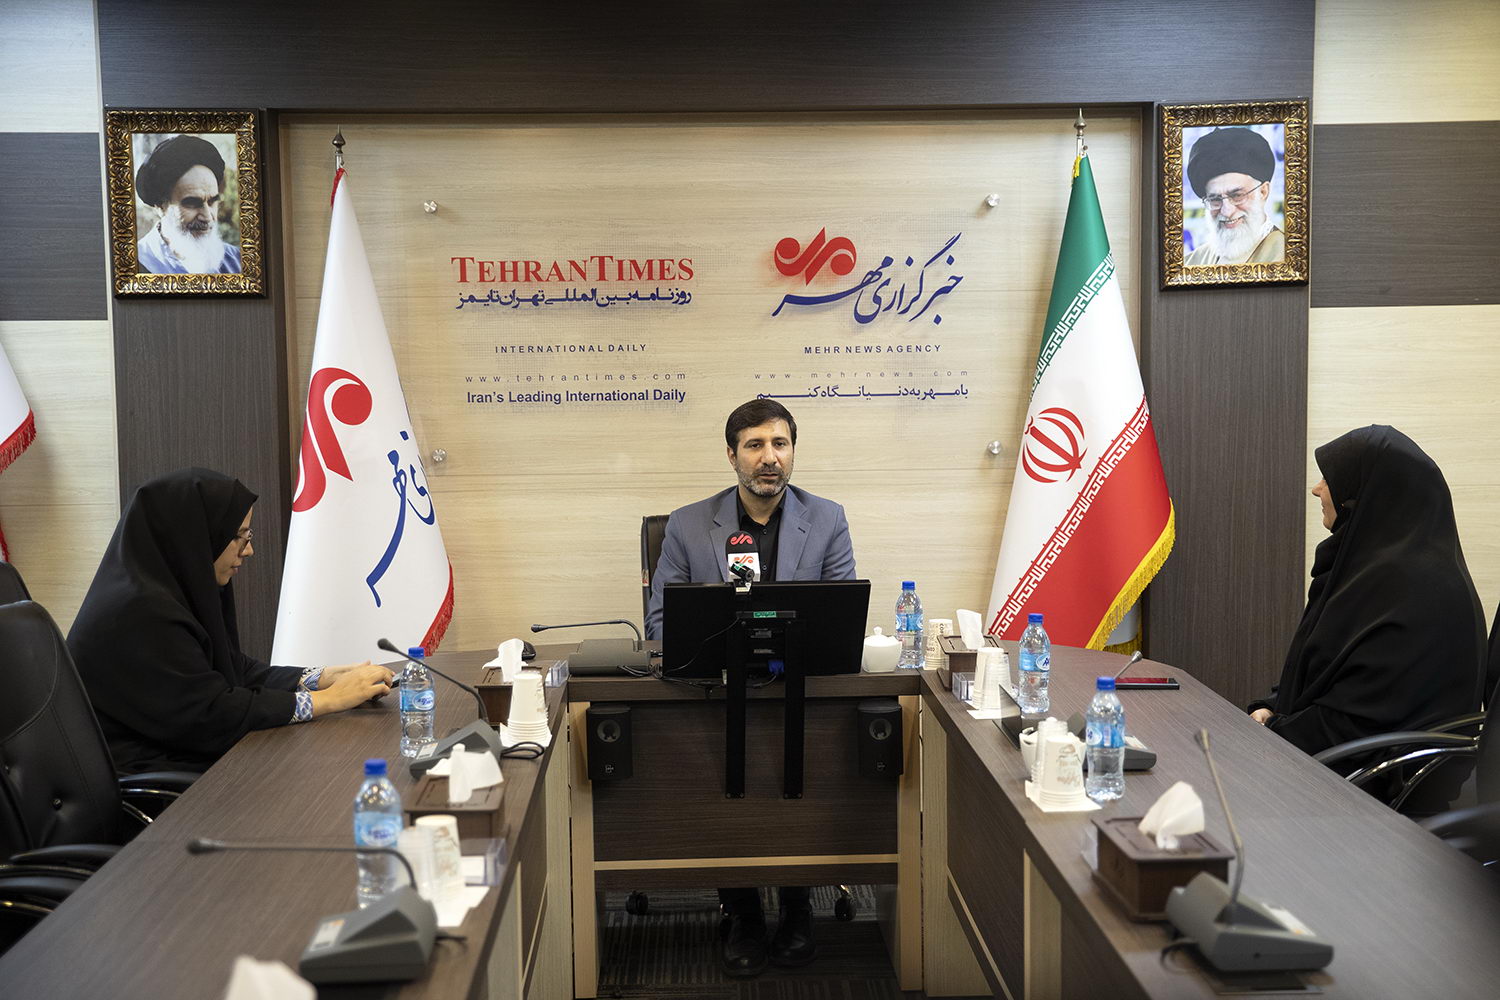 سخنگوی شورای نگهبان از خبرگزاری مهر بازدید کرد